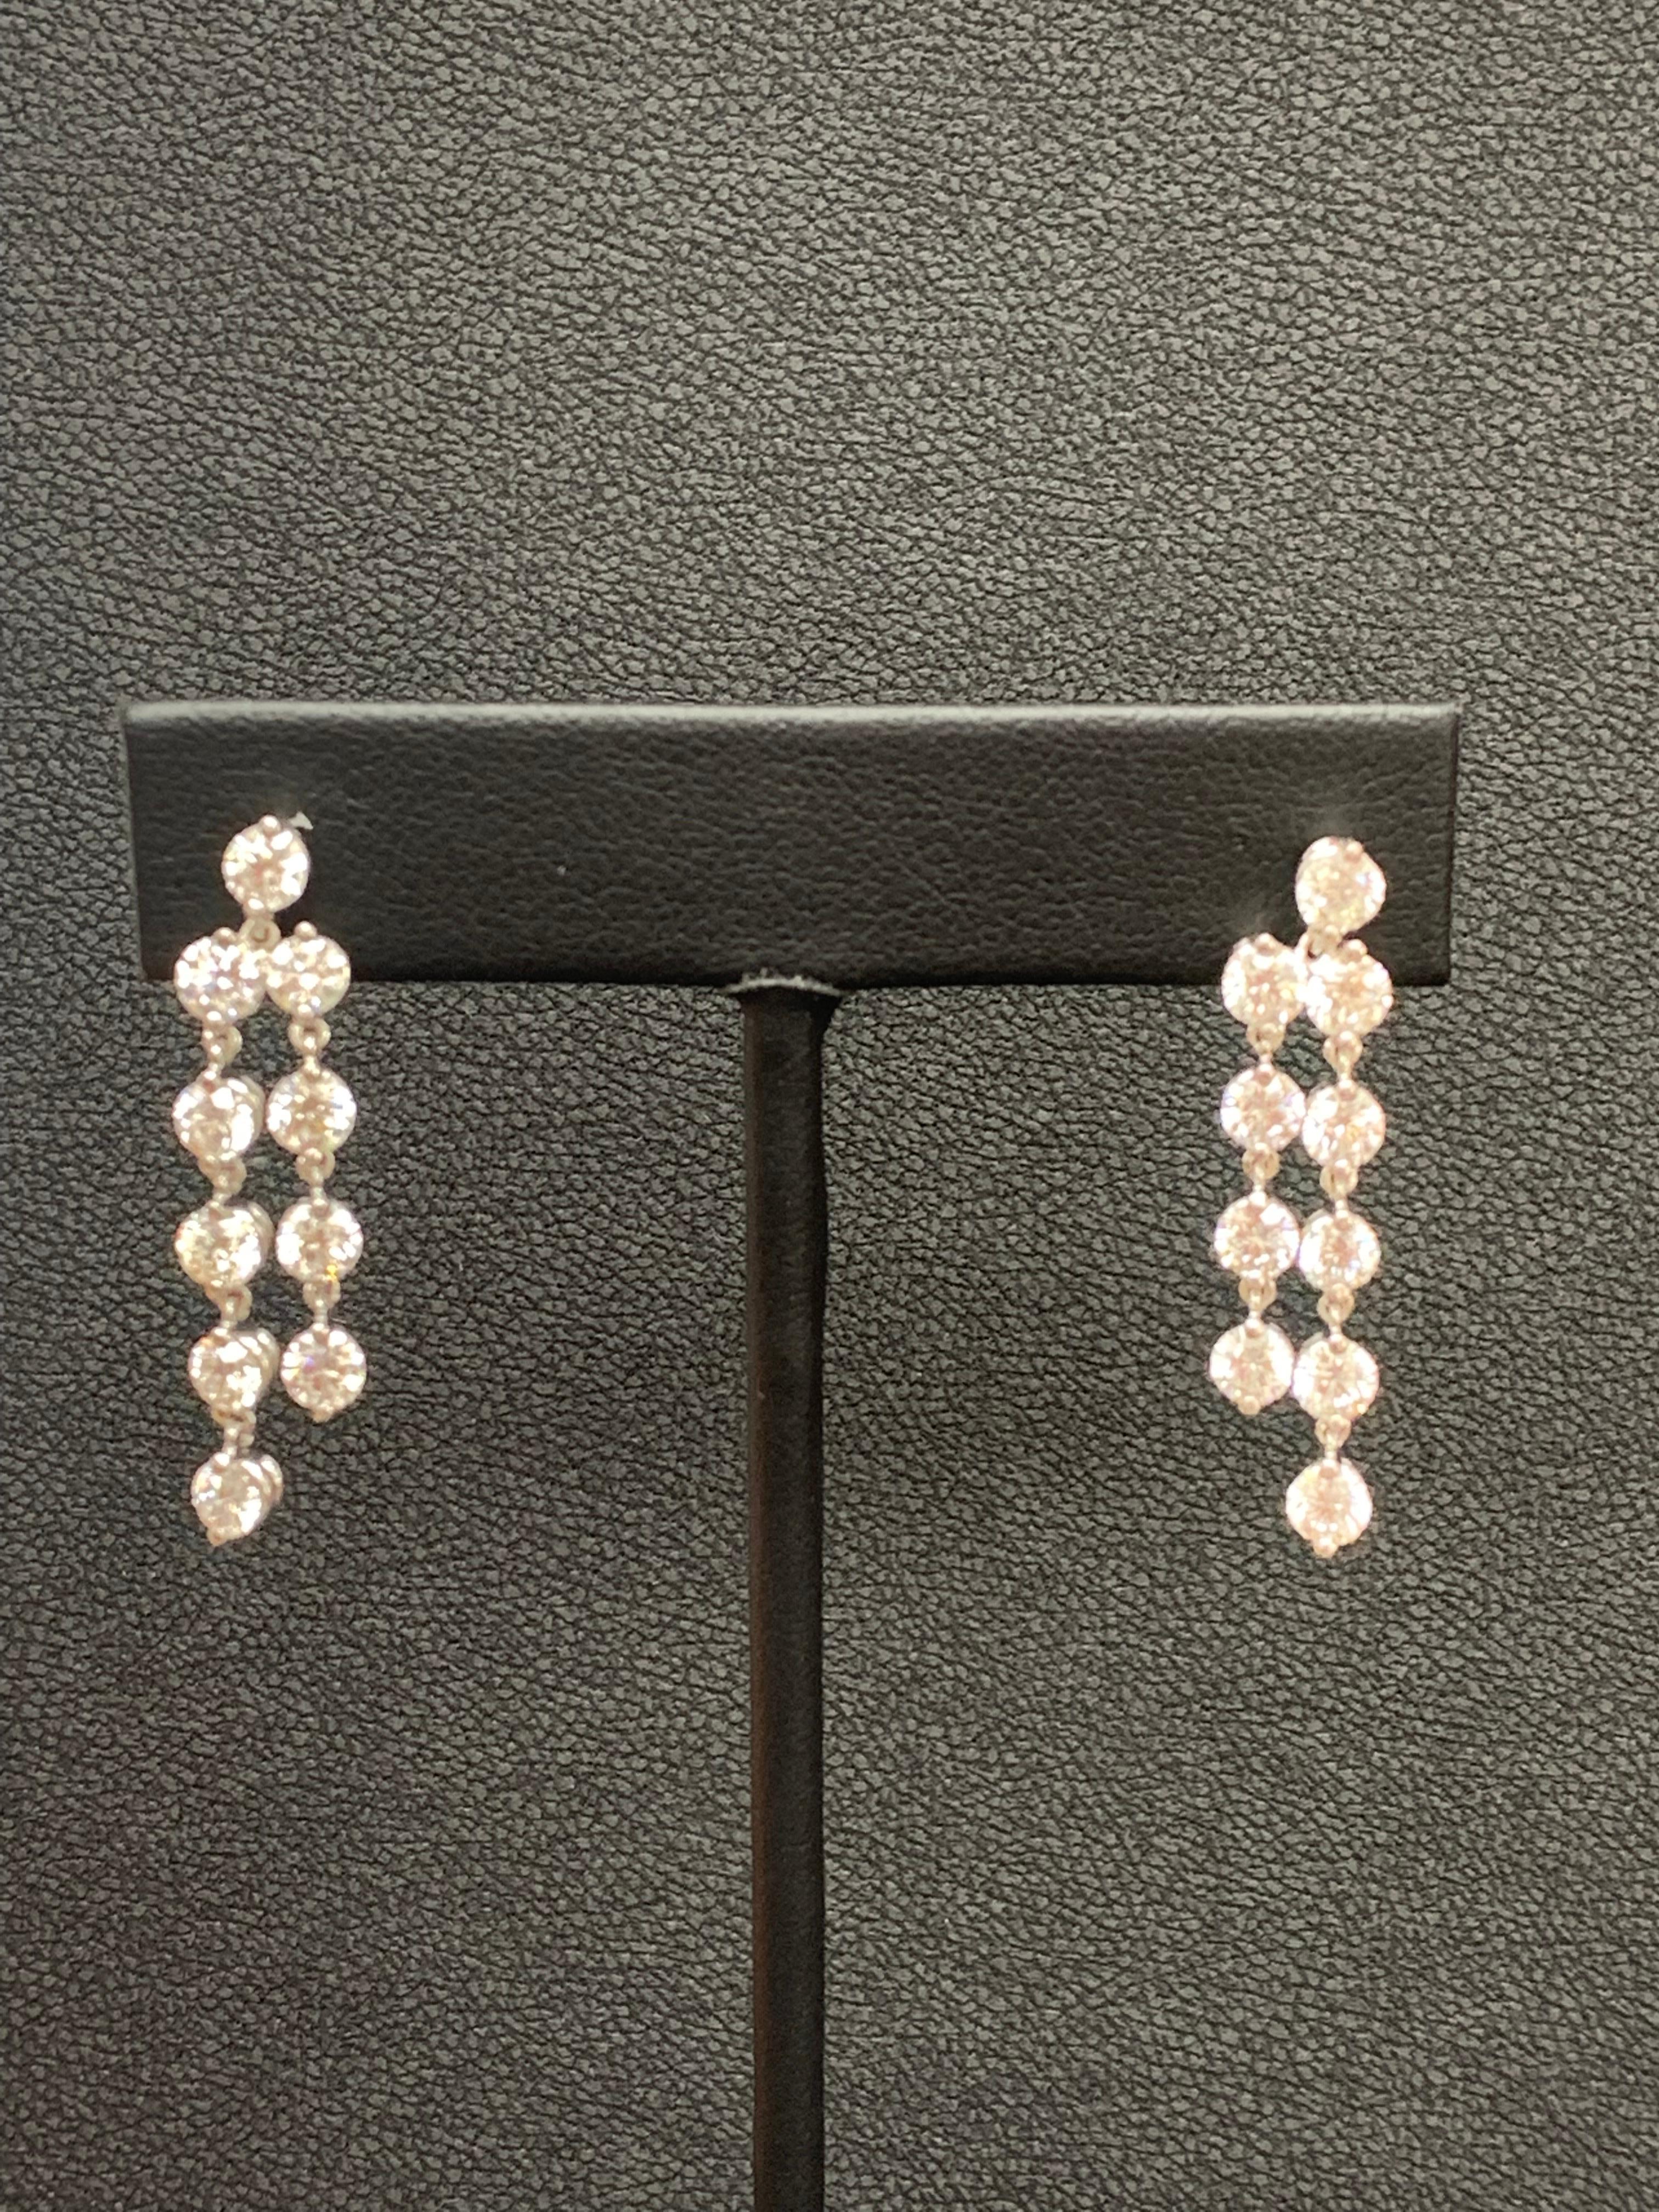 5.01 Carat Diamond Chandelier Earrings in 14k White Gold For Sale 2